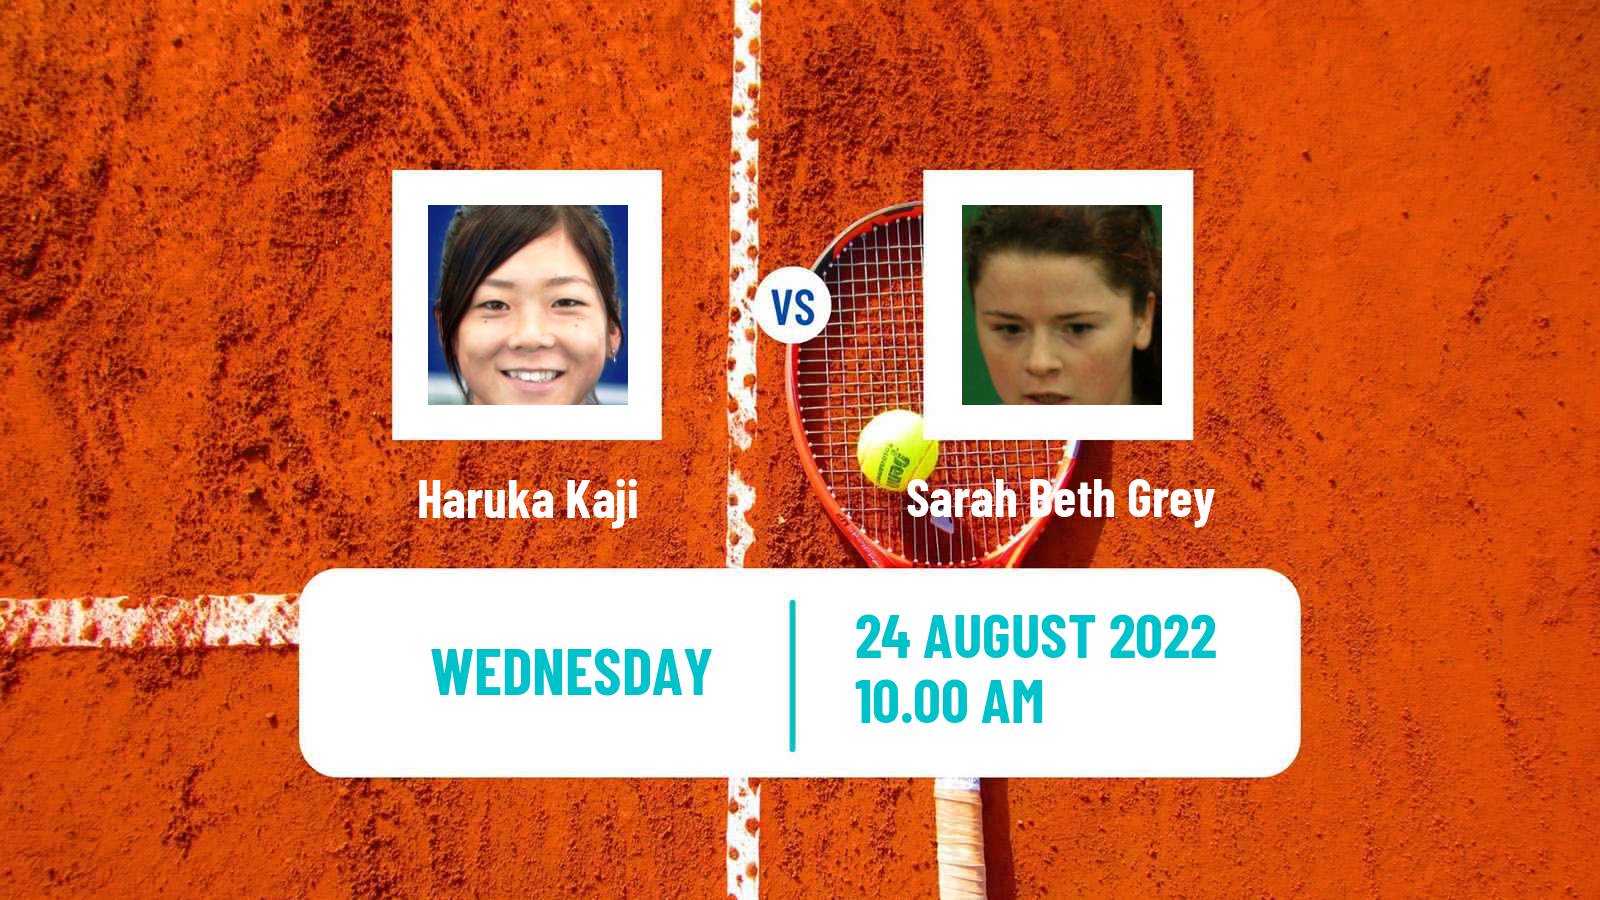 Tennis ITF Tournaments Haruka Kaji - Sarah Beth Grey